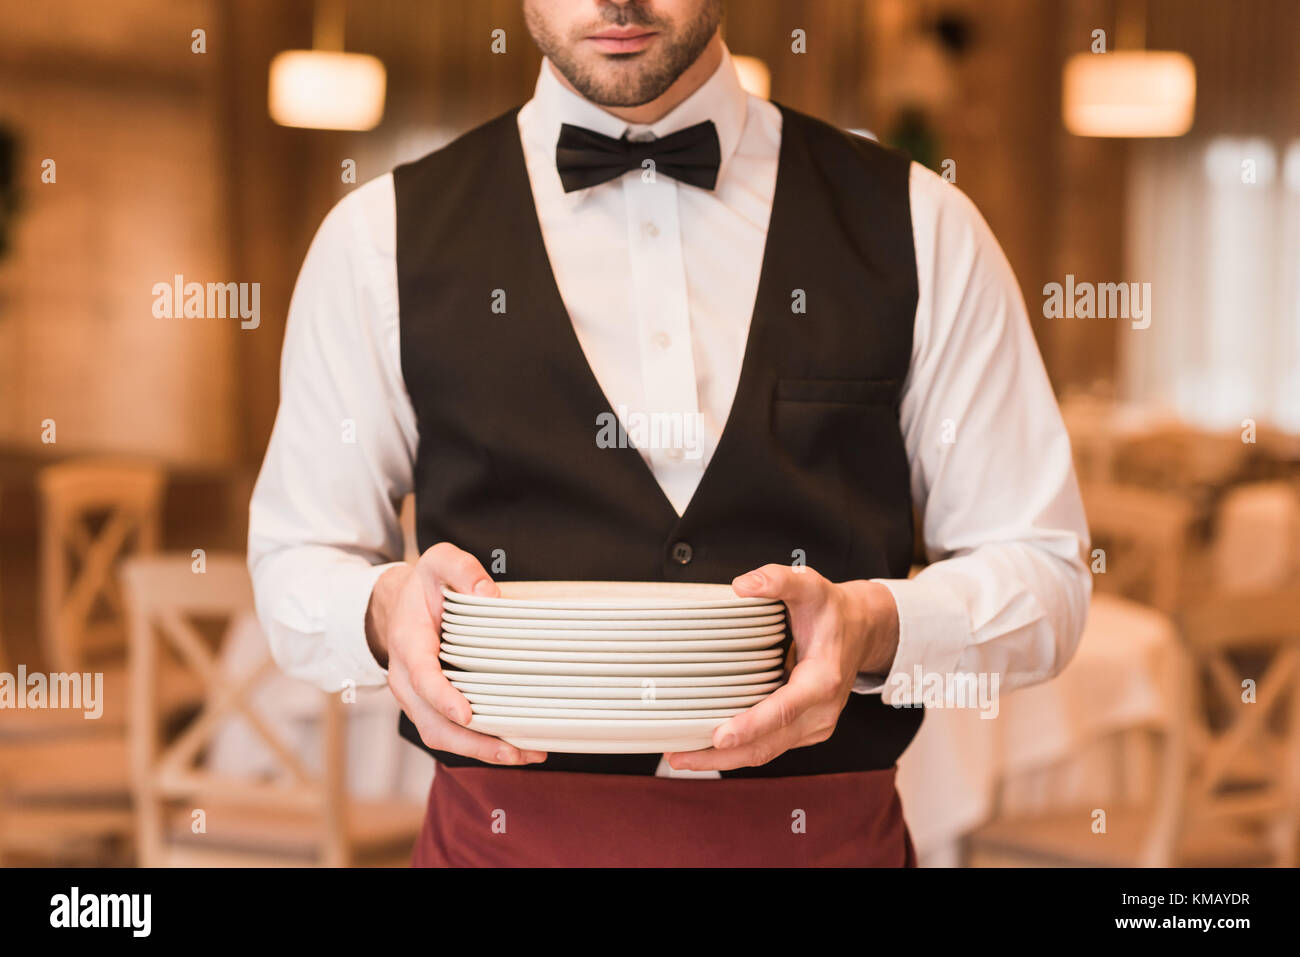 Waiter holding pile of plates  Stock Photo